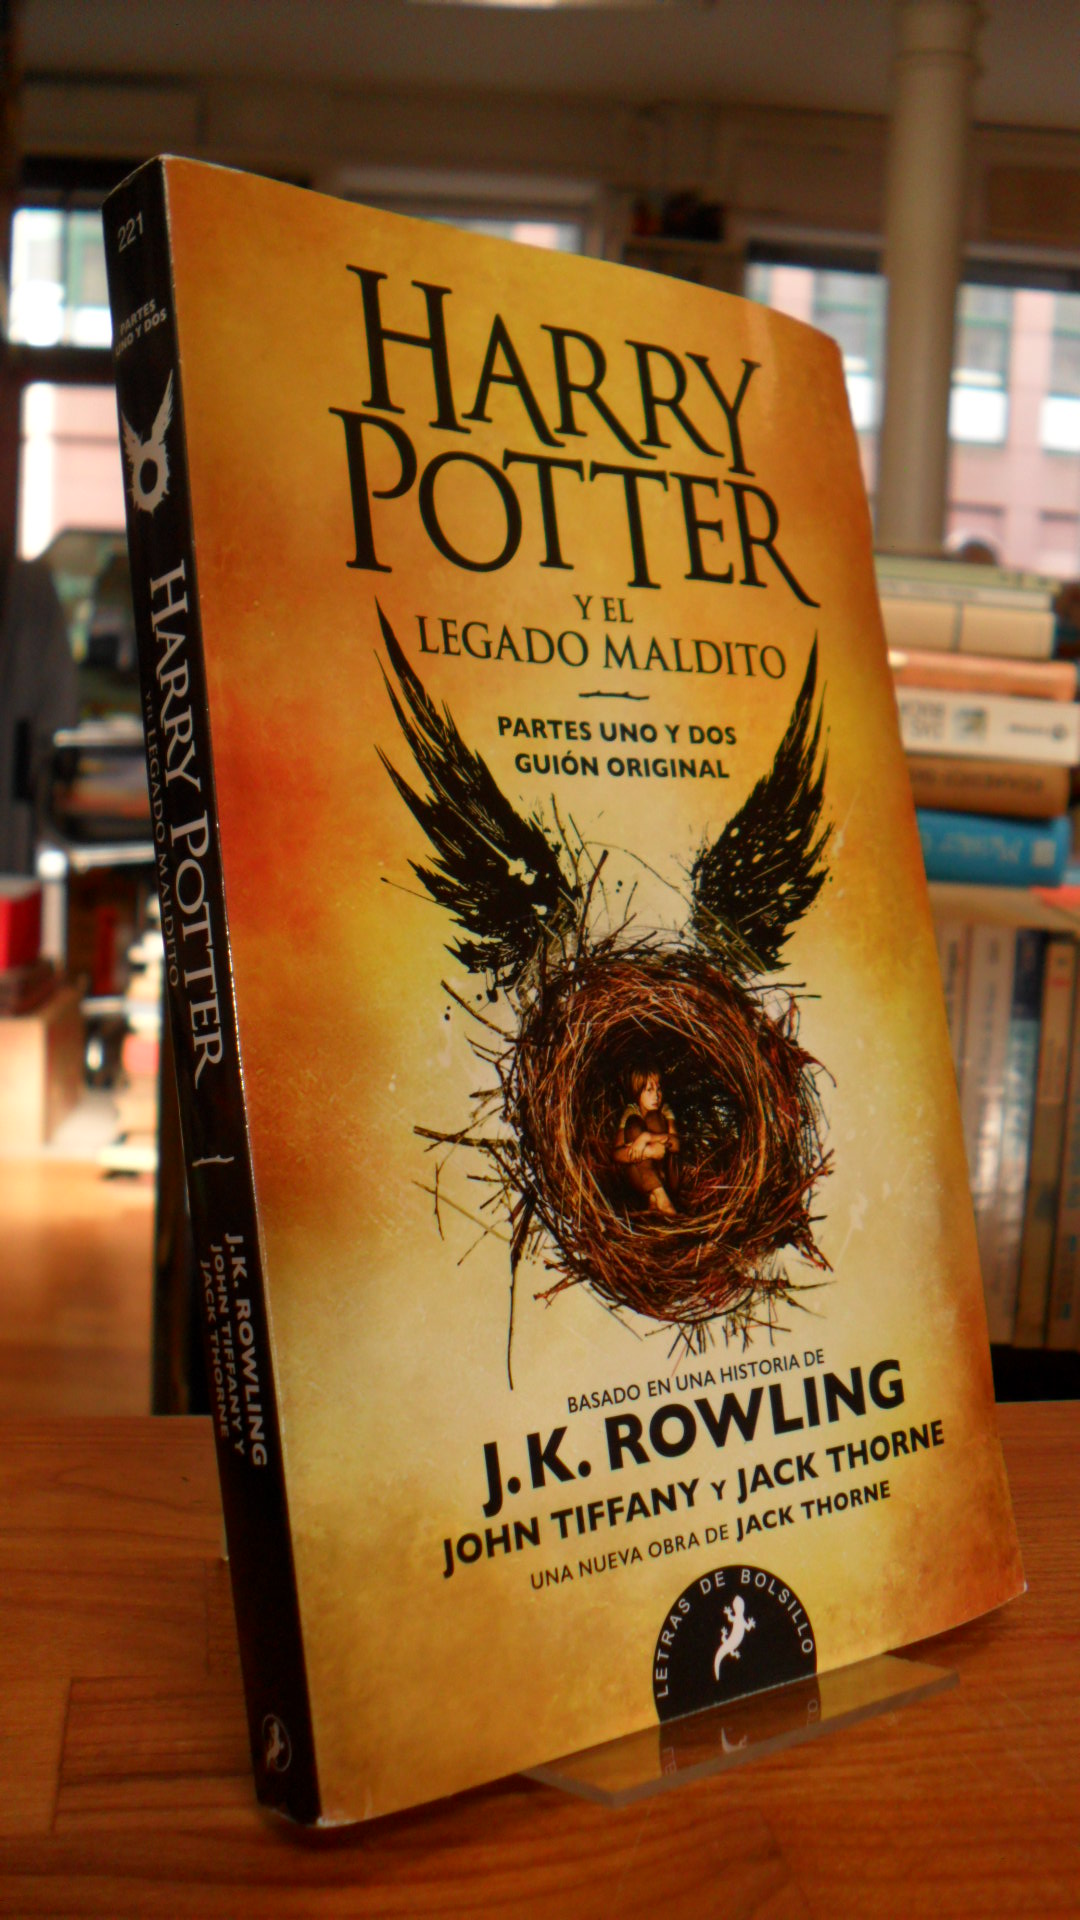 Rowling, Harry Potter y el legado maldito – Partes uno y dos guión original,